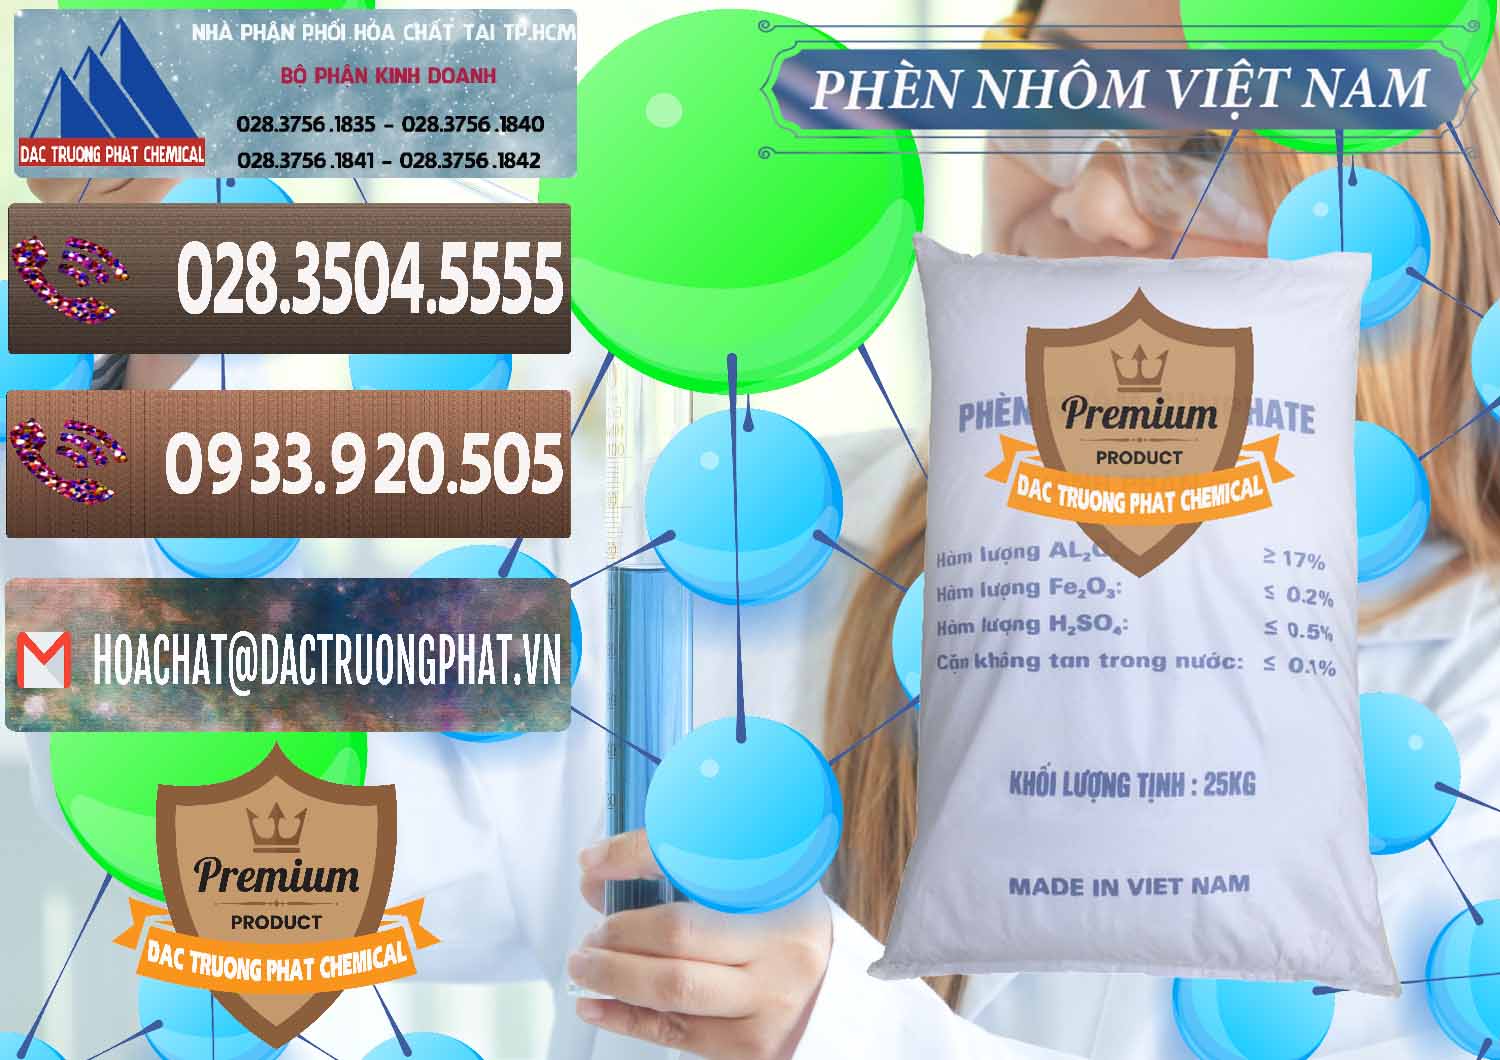 Công ty cung cấp và bán Phèn Nhôm - Al2(SO4)3 17% Việt Nam - 0465 - Cty bán & cung cấp hóa chất tại TP.HCM - hoachatviet.net